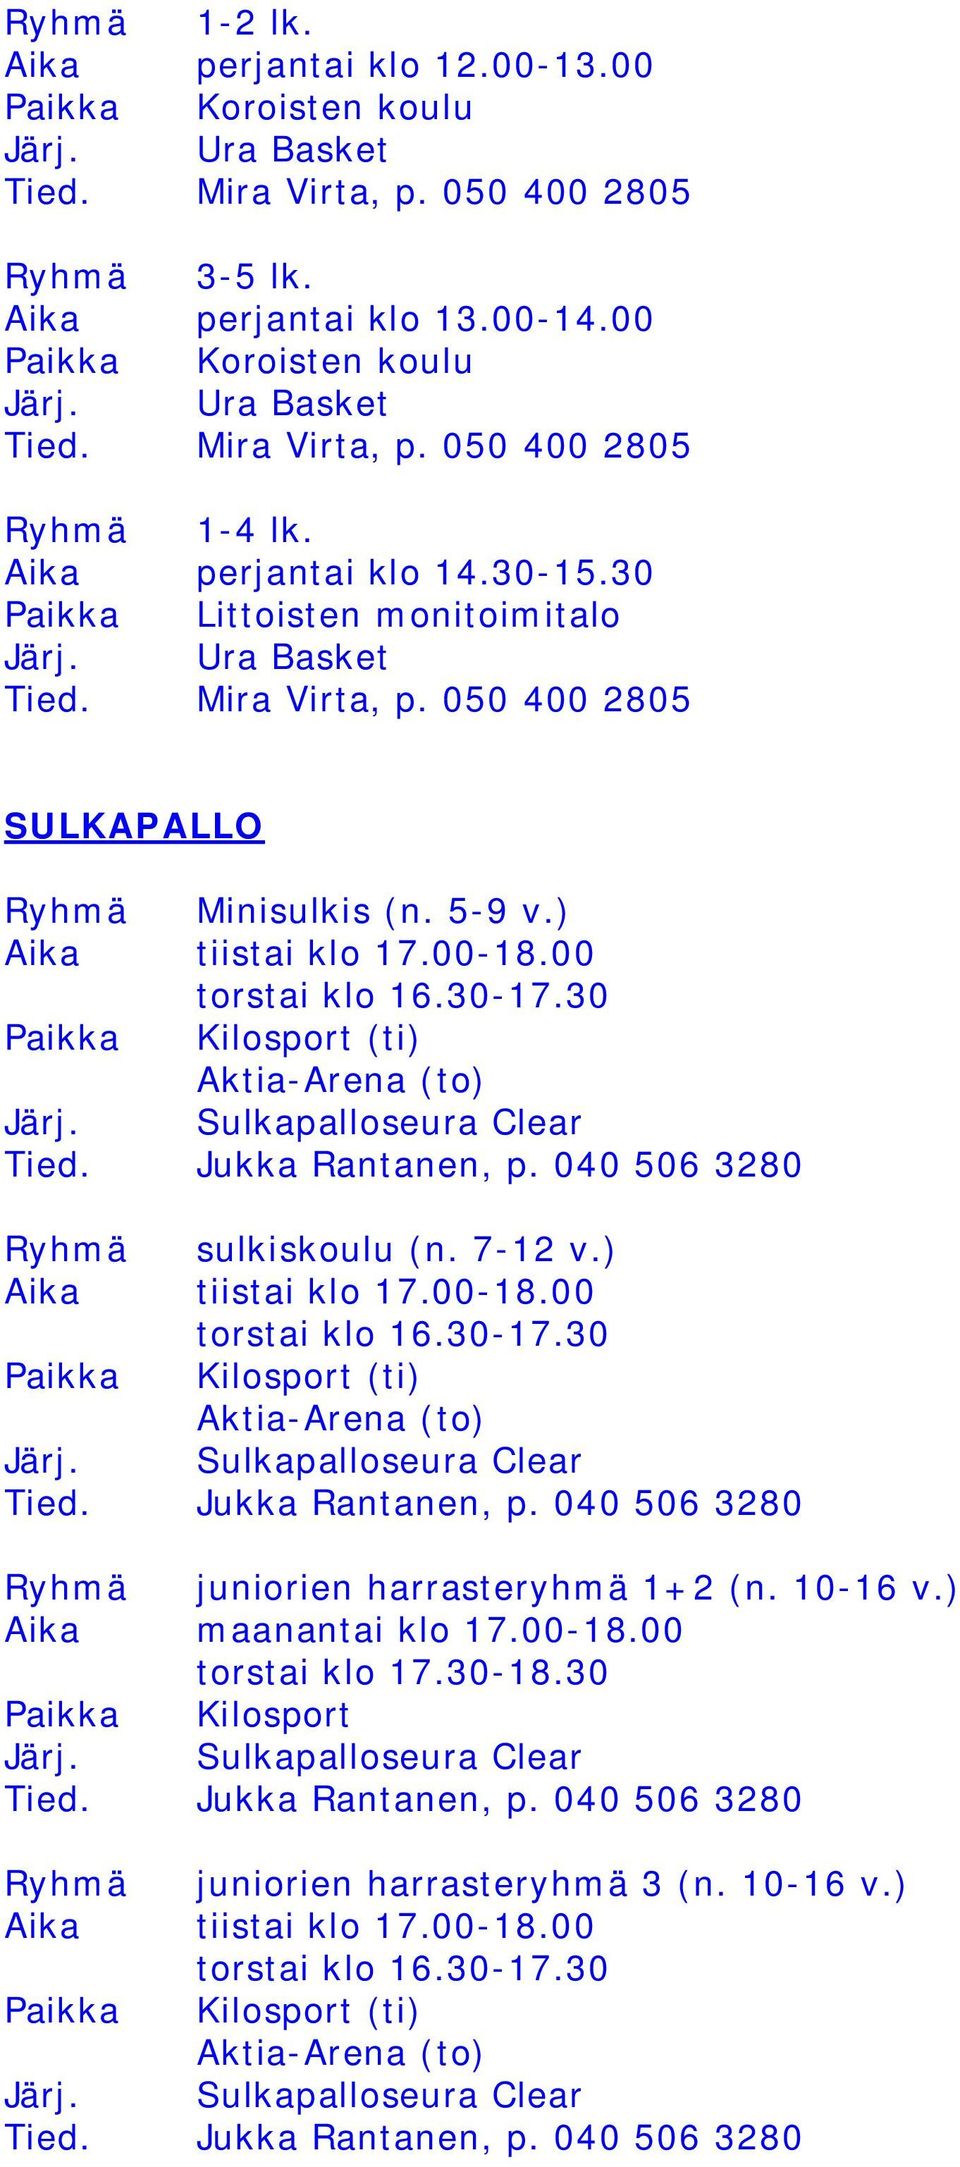 30 Paikka Kilosport (ti) Aktia-Arena (to) Järj. Sulkapalloseura Clear Tied. Jukka Rantanen, p. 040 506 3280 Ryhmä sulkiskoulu (n. 7-12 v.) Aika tiistai klo 17.00-18.00 torstai klo 16.30-17.